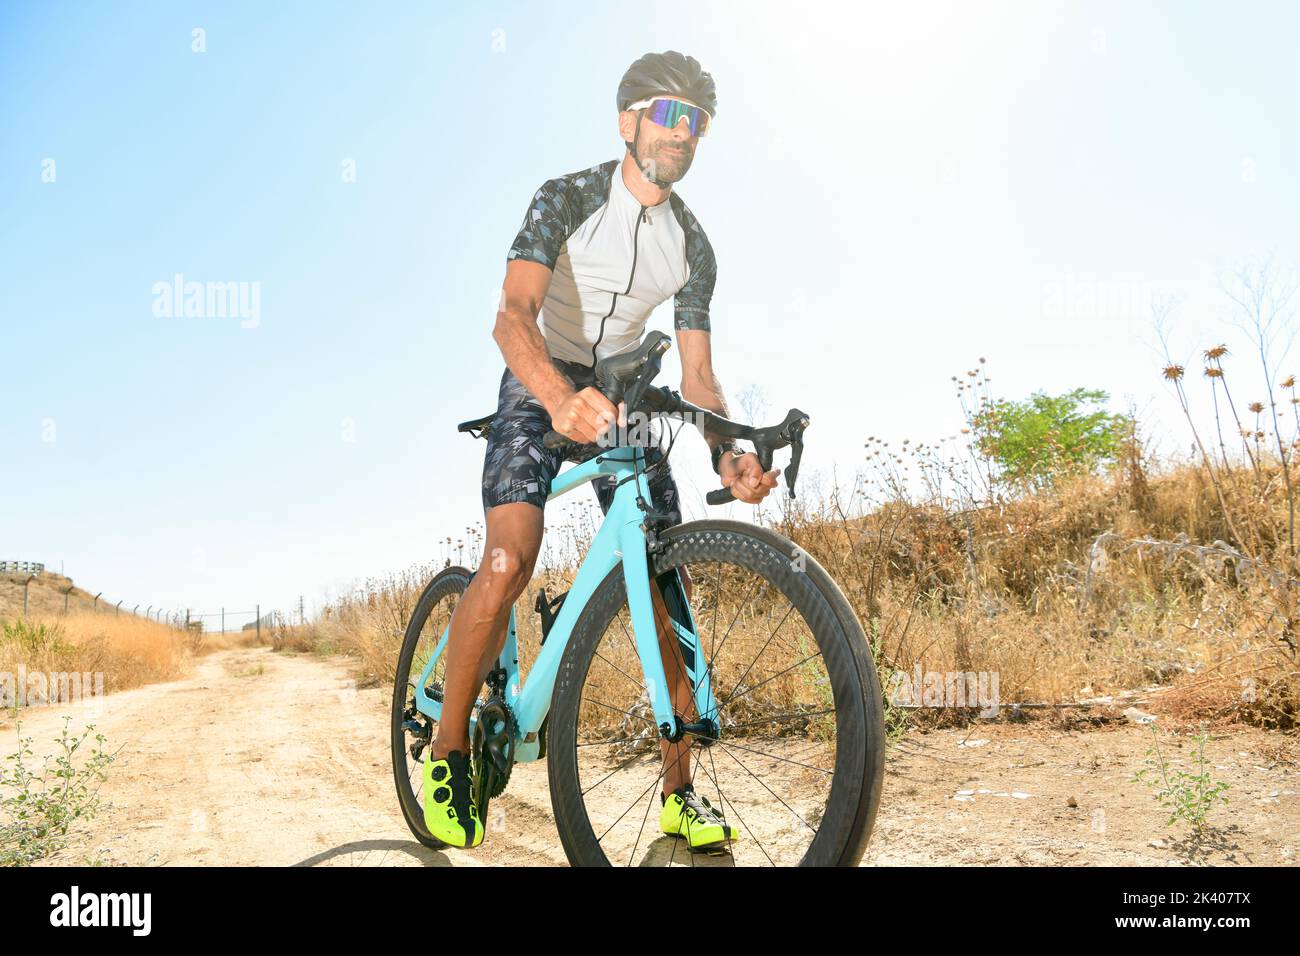 Cycliste pédalant en plein air avec tout son équipement de sécurité : casque, lunettes de soleil, par une journée ensoleillée Banque D'Images